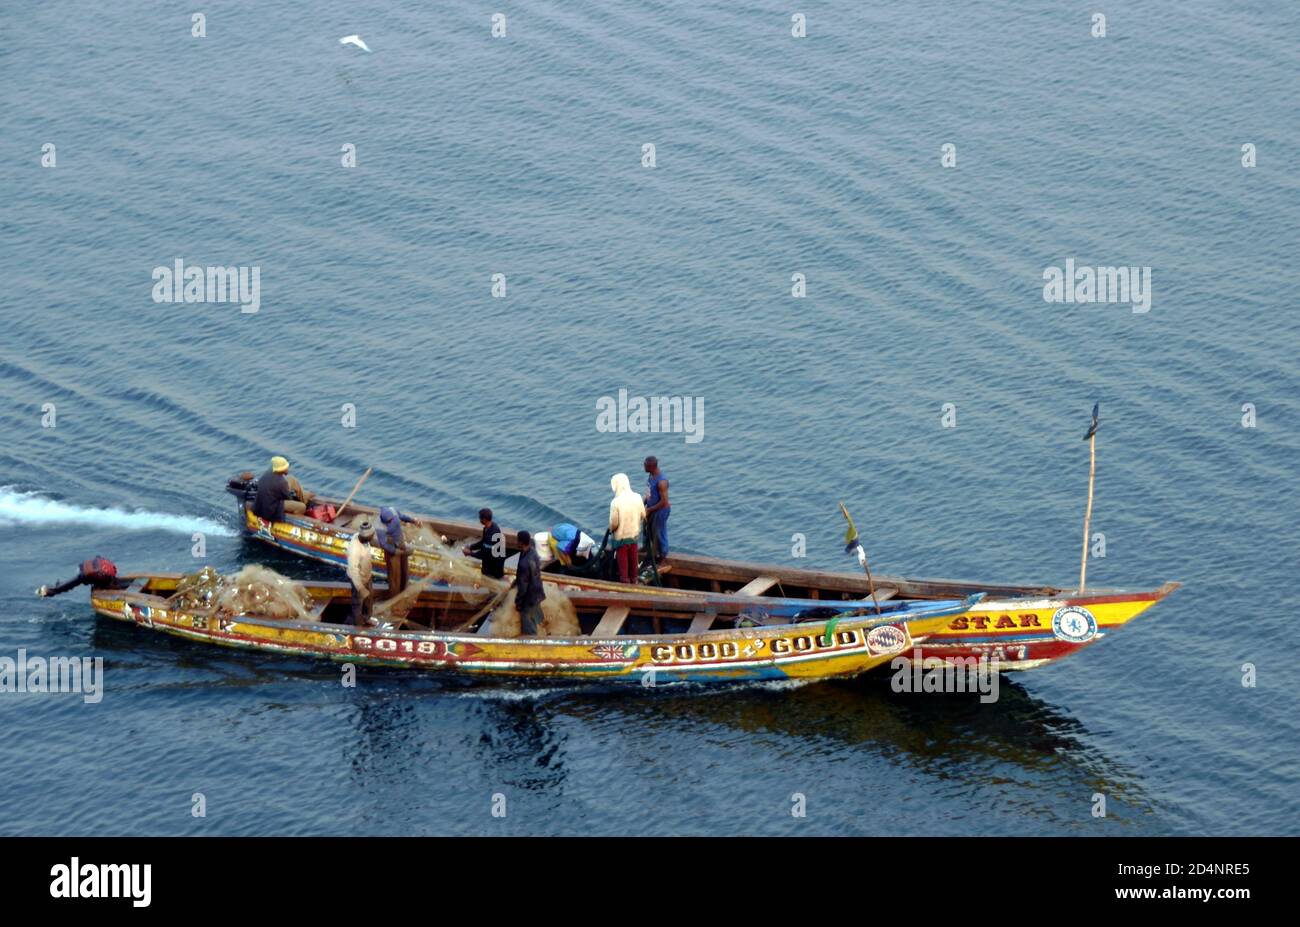 Antiguos barcos de pesca de madera, de muchos colores, tripulados con nativos africanos que se aproximan a la zona de pesca y preparan redes cerca de Freetown en Sierra Leona. Foto de stock